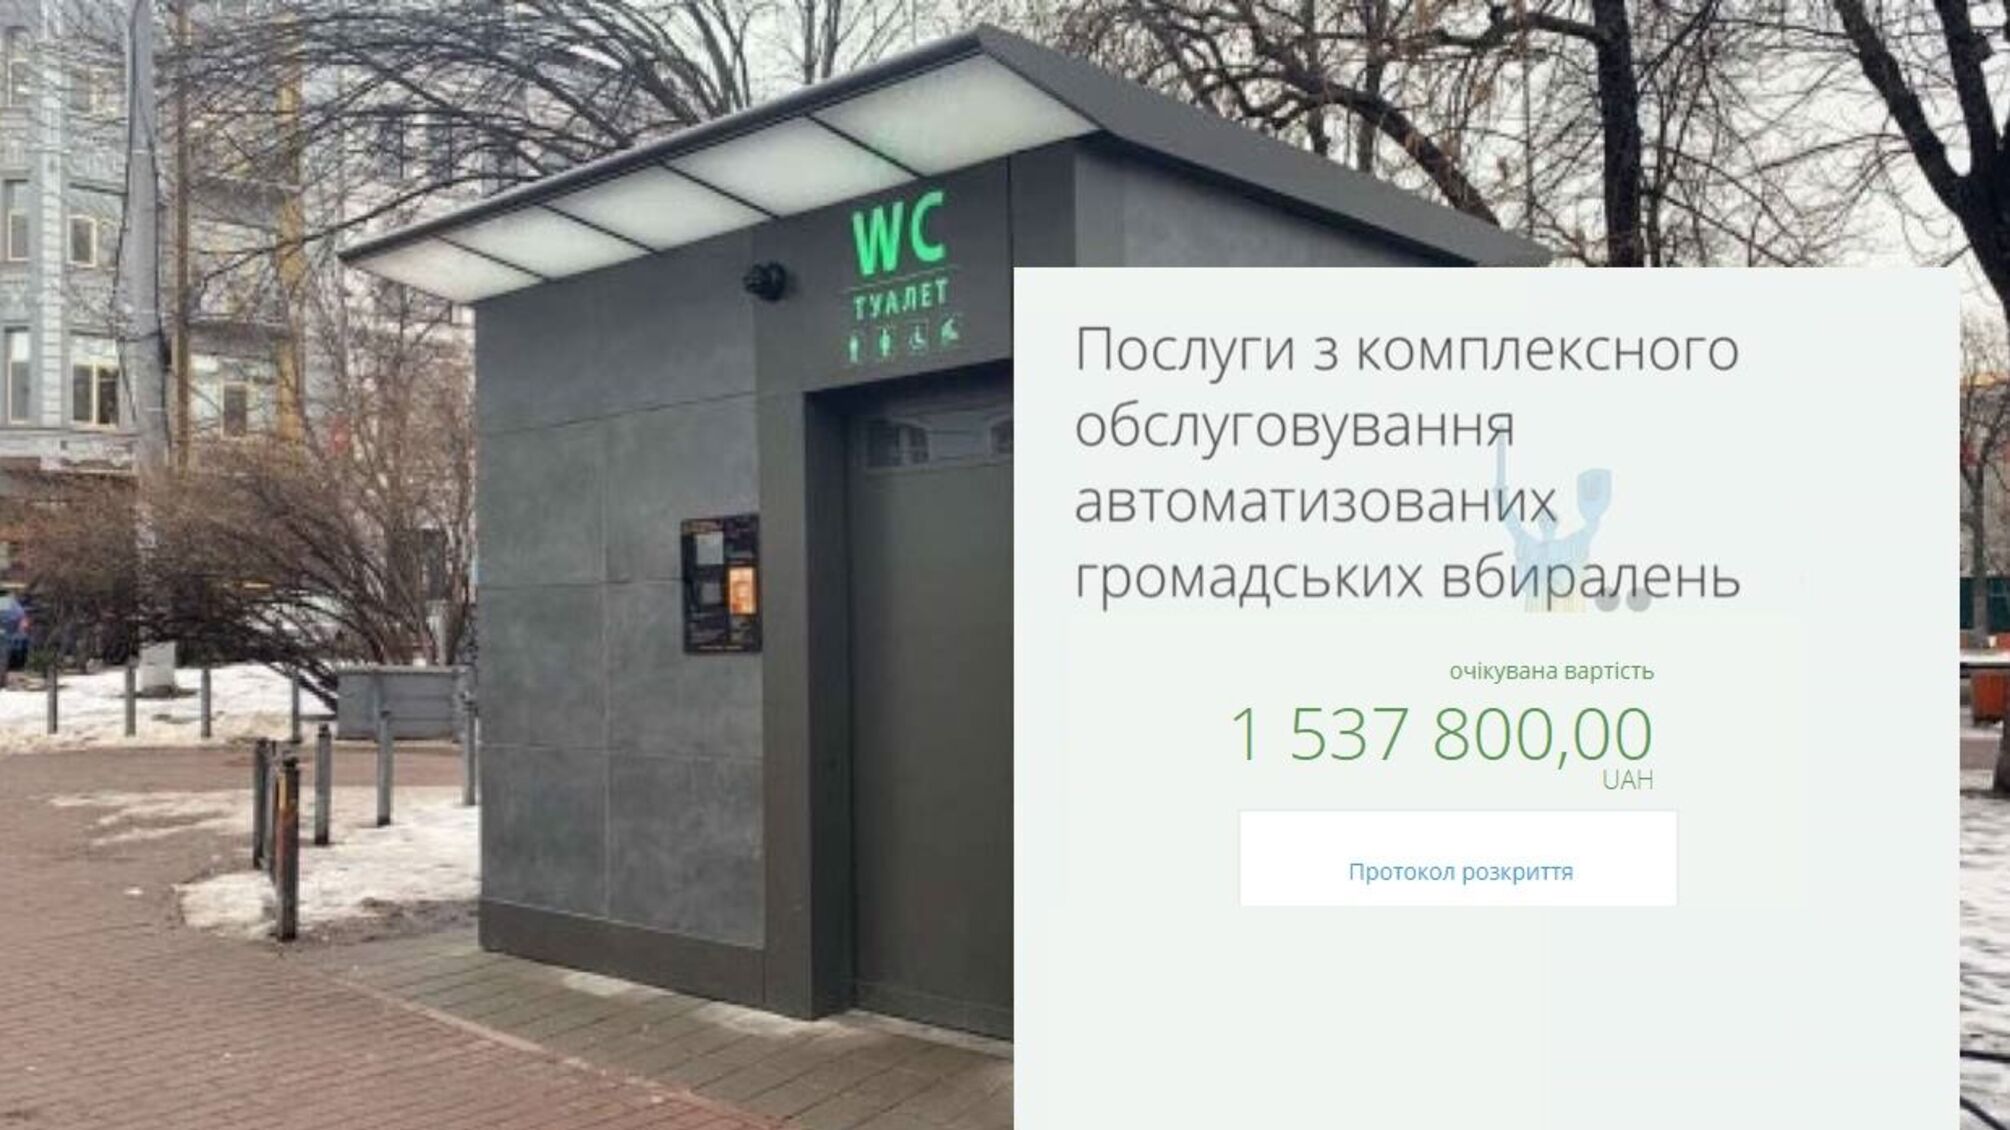 Киев хочет 'спустить на унитазы' 1,5 миллиона гривен